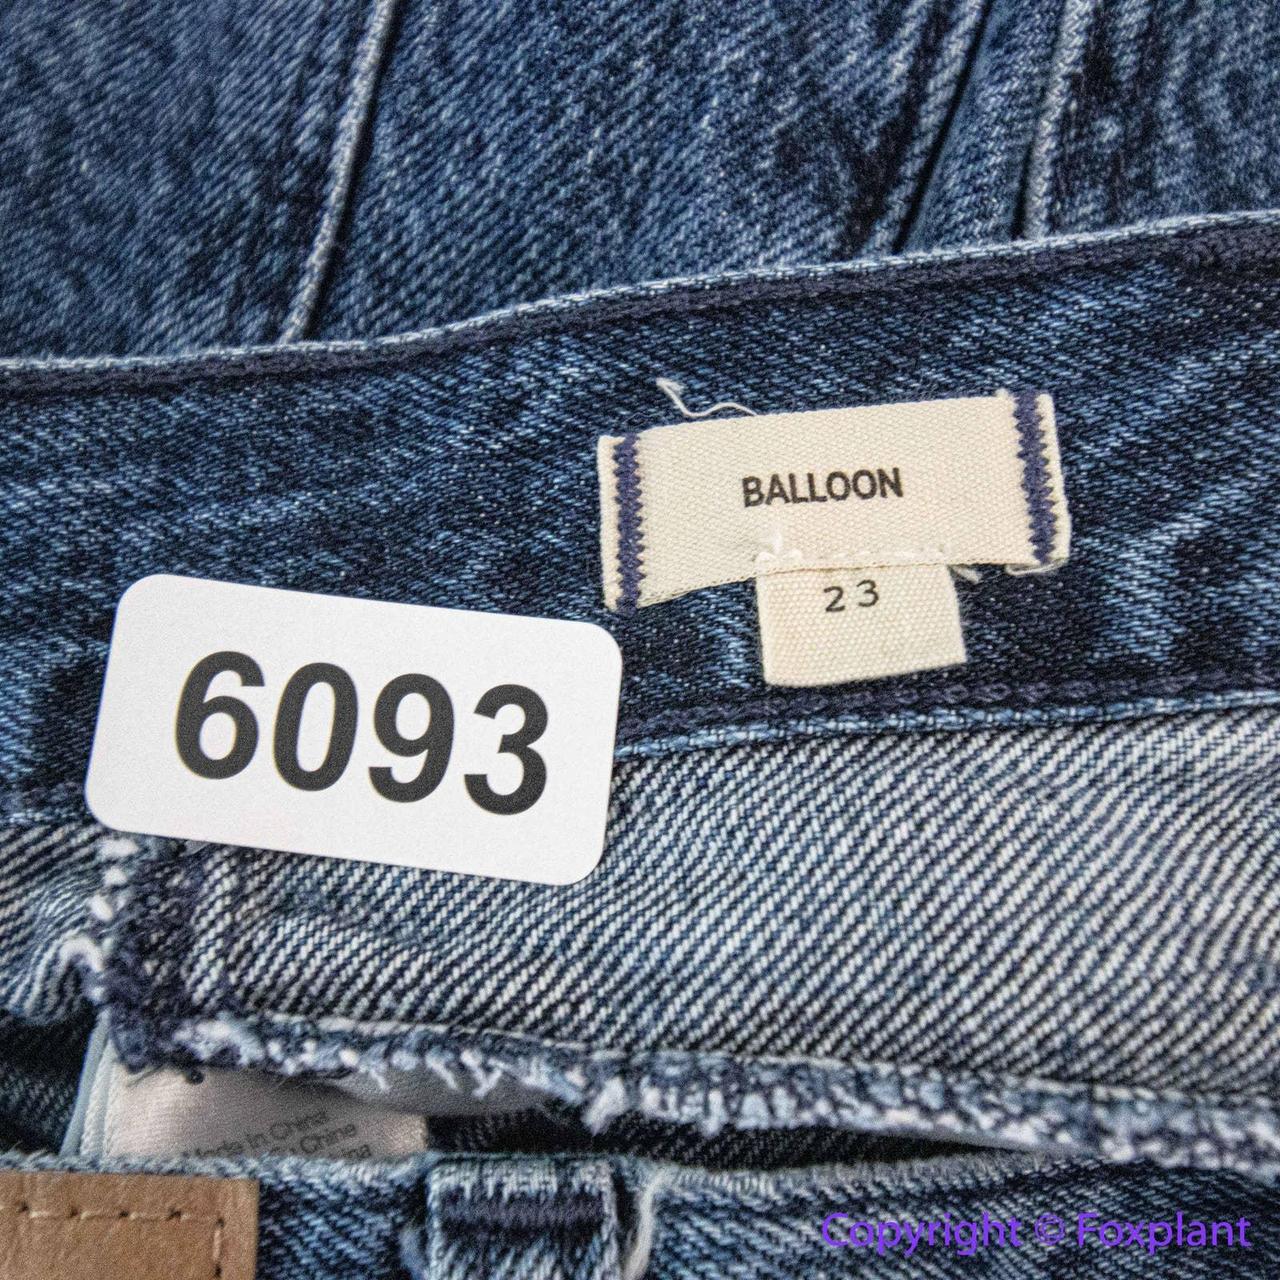 Balloon Jeans in Sanford Wash